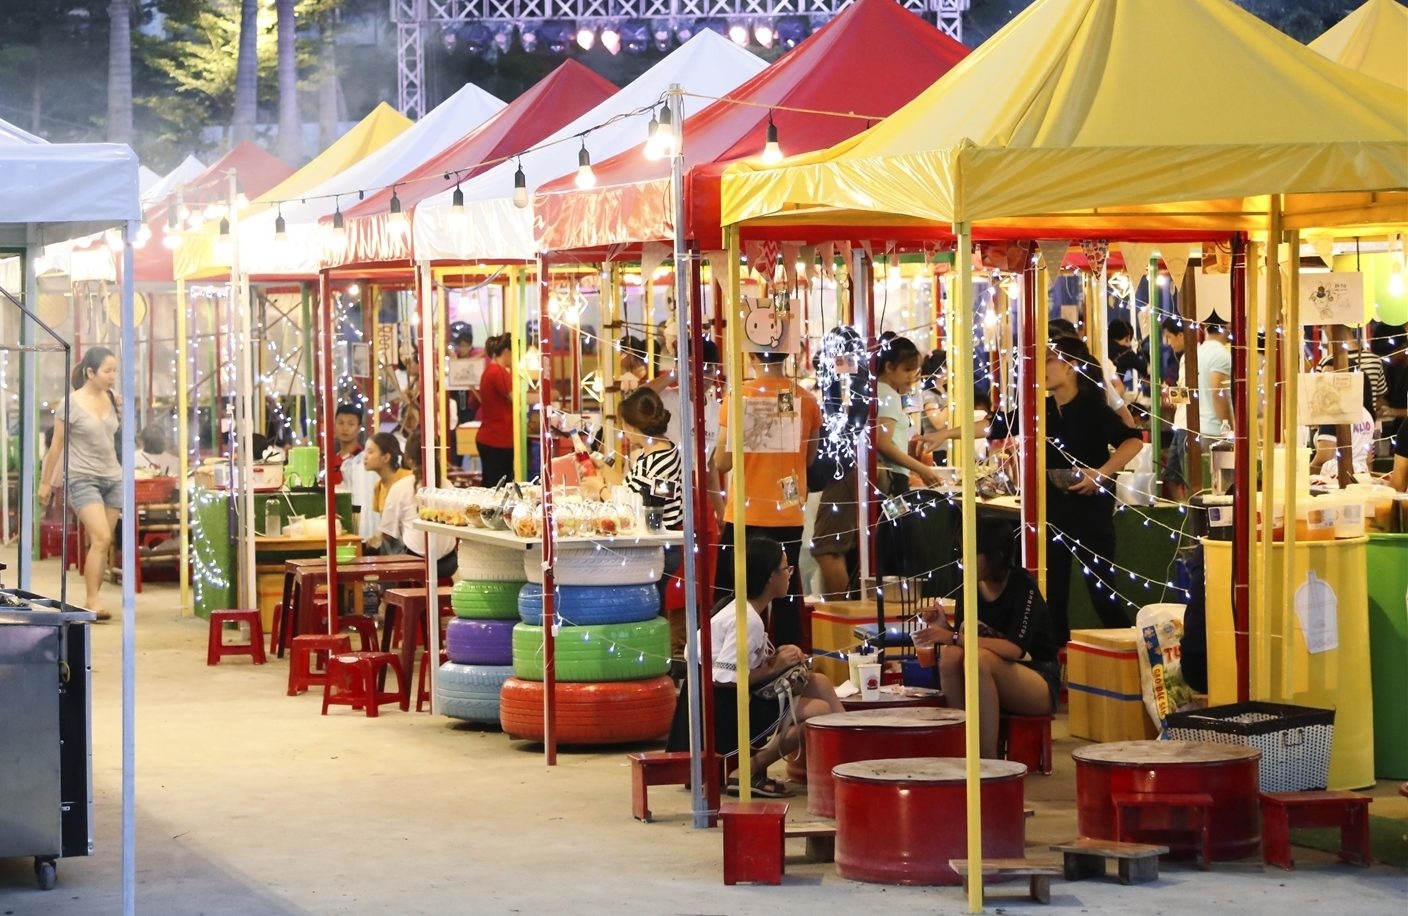 Tham gia chợ đêm Helio Đà Nẵng để tận hưởng cảm giác du lịch đặc biệt